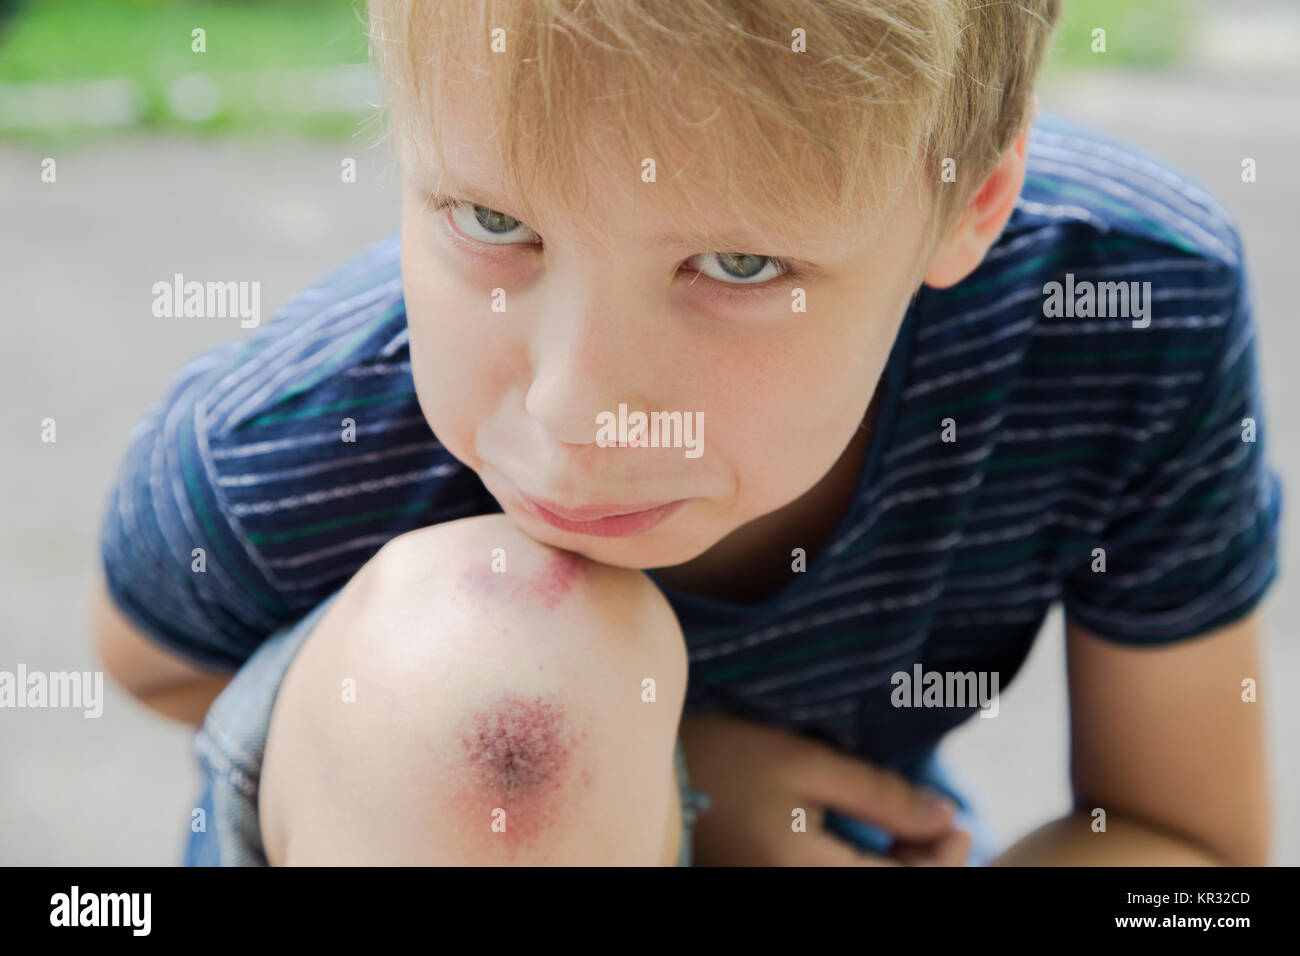 Nahaufnahme des verletzten Jungen kid Knie, nachdem er sich auf Pflaster fiel. Boy's Gesicht und Verwundeten abgekratzt Bein auf Sommer Tag im Freien. Horizontale Color Foto. Stockfoto